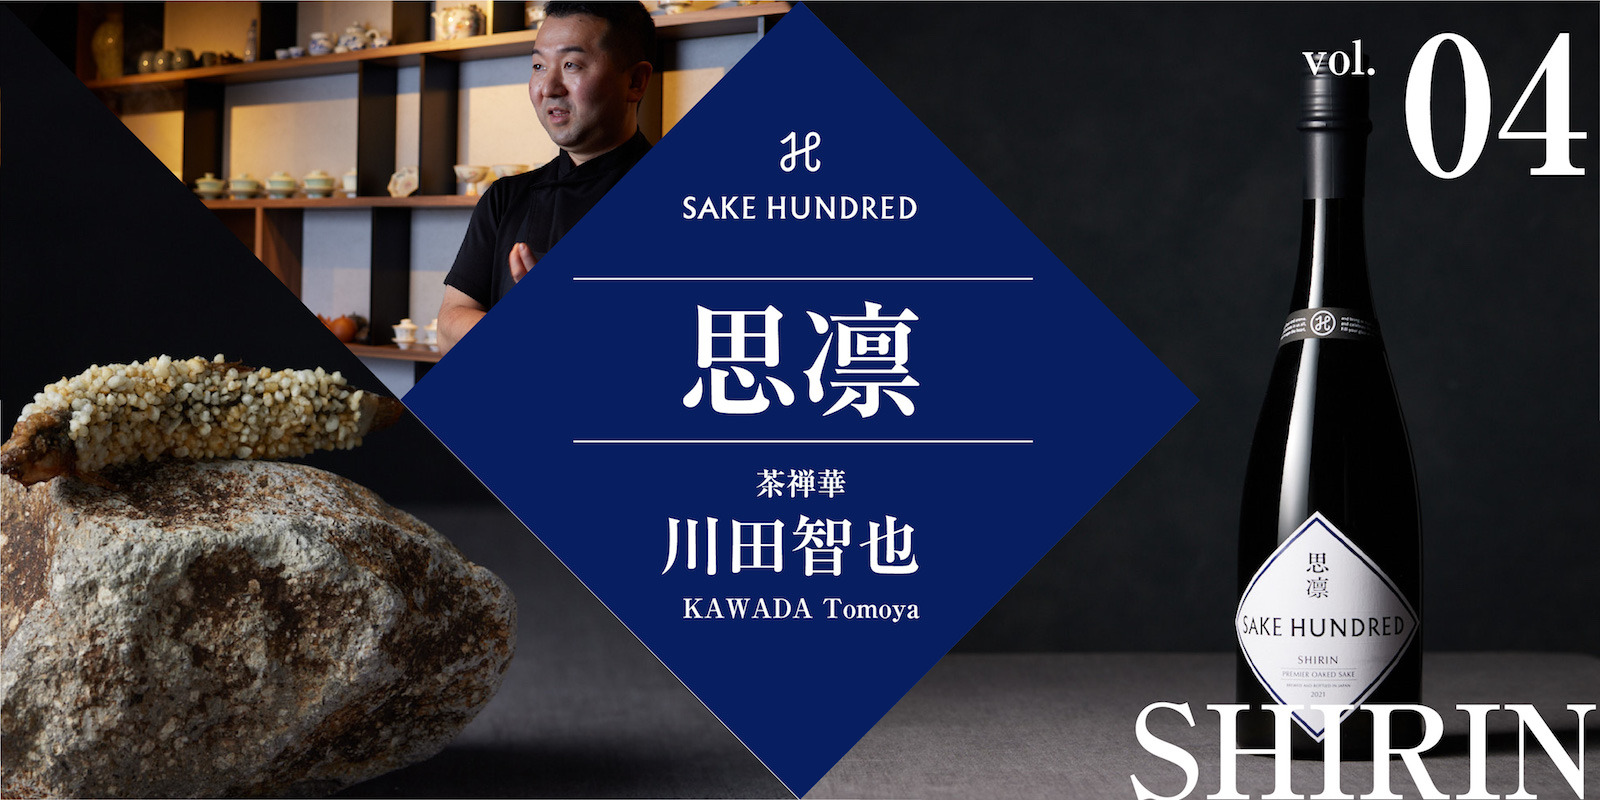 日本酒 SAKE HUNDRED 「思凛」の+frutascalero.com